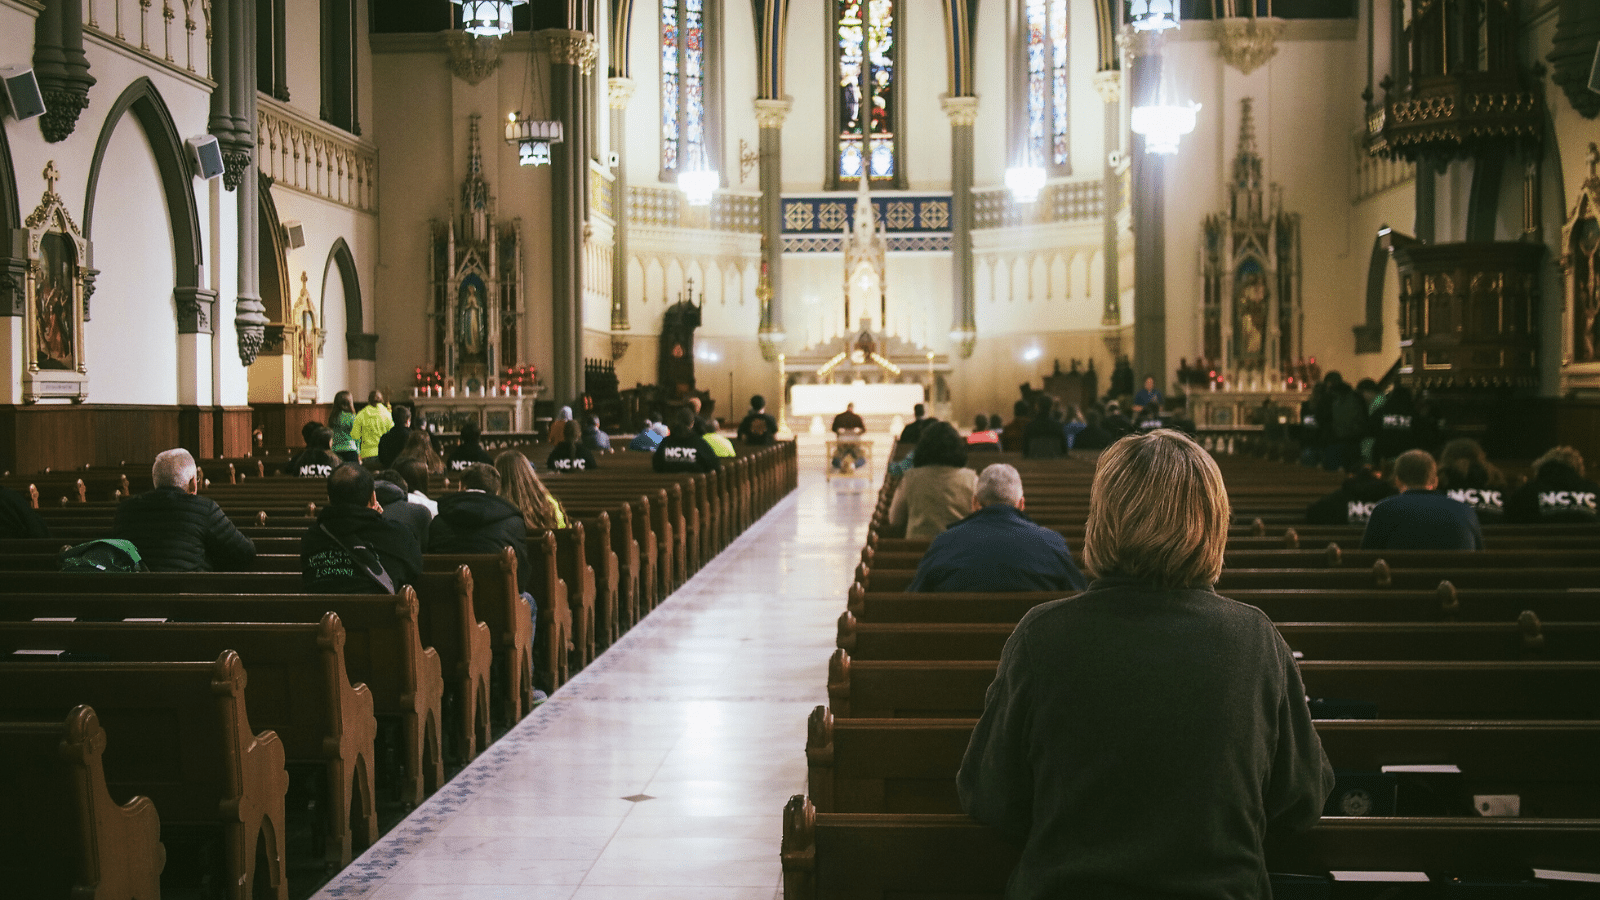 Catholic Mass